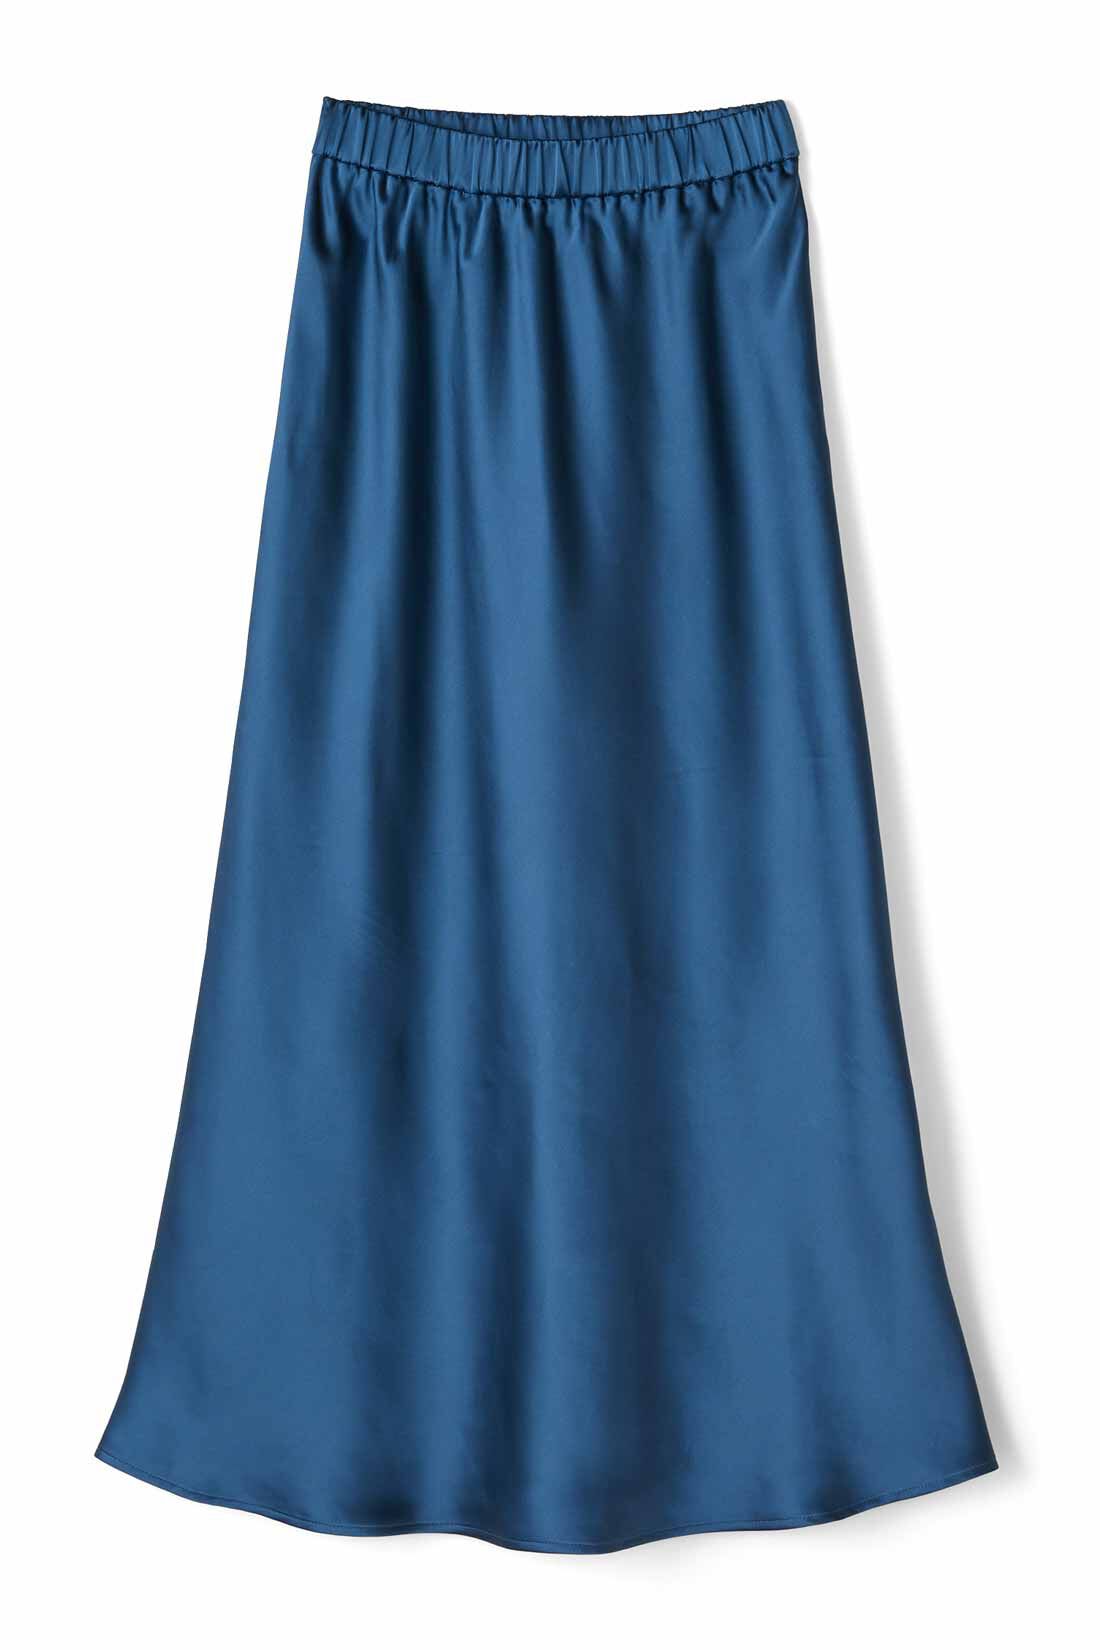 IEDIT|IEDIT[イディット]　サテンの光沢が美しいセミサーキュラースカート〈ディープブルー〉|〈ディープブルー〉